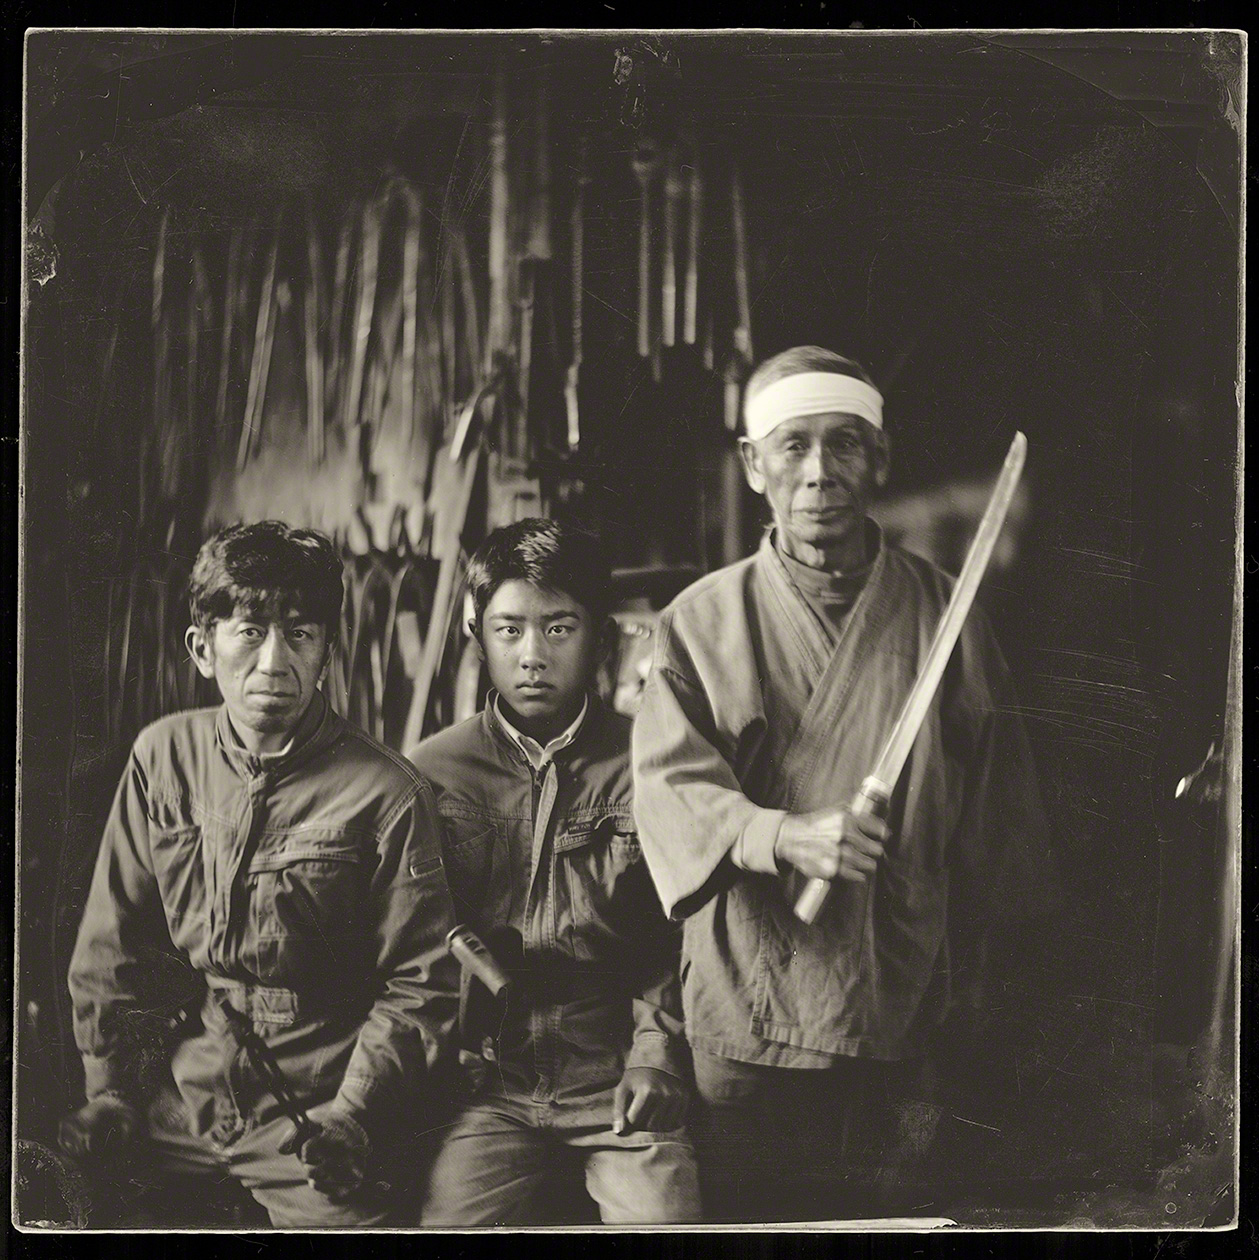 Trois générations de forgerons dans la ville située non loin de Yasugi. La région est reconnue pour la qualité de son artisanat, que ce soit pour la fonte de fer ou la création d’épées de grande qualité.